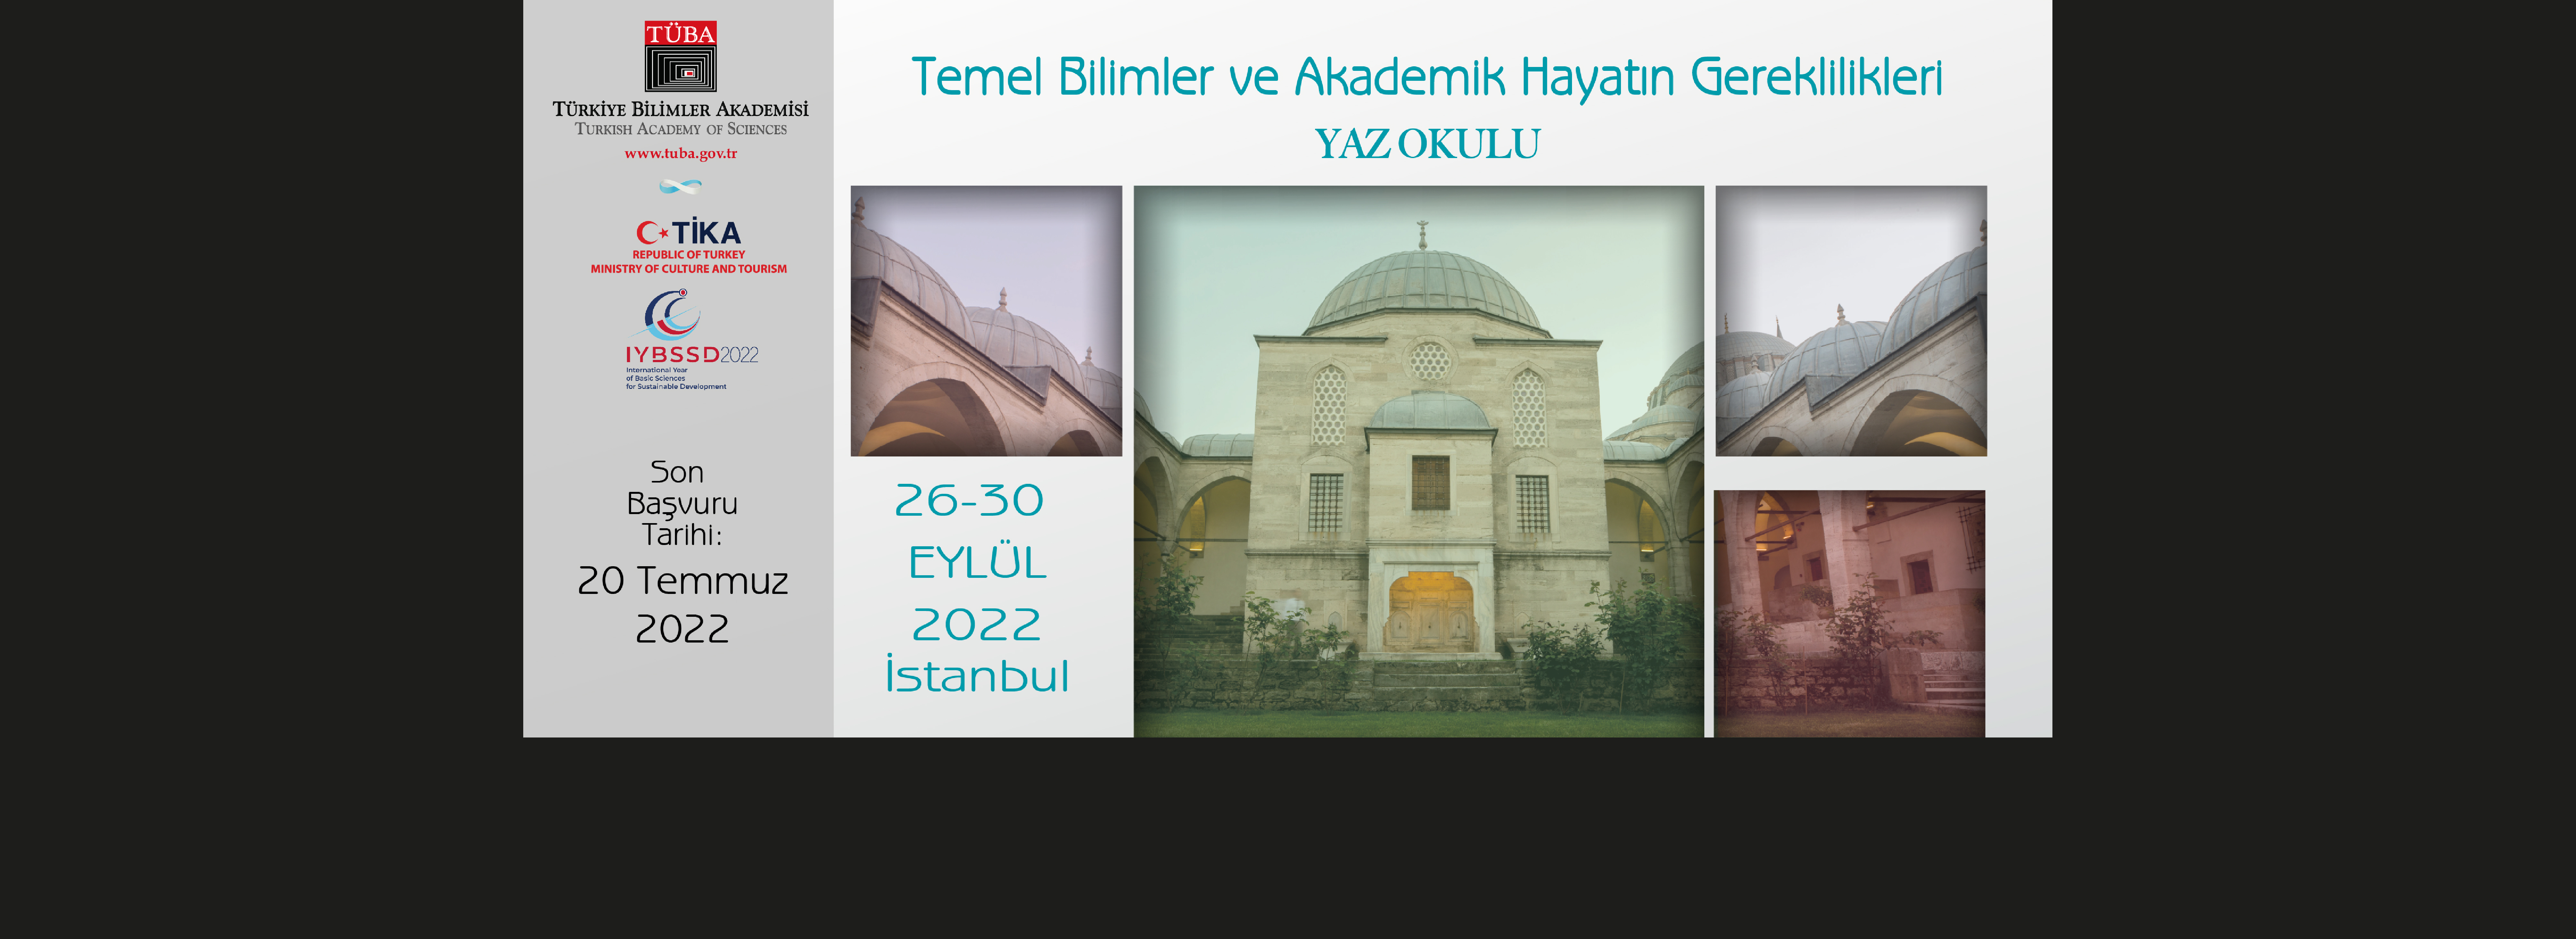 TÜBA’dan Türk Dünyasına “Temel Bilimler ve Akademik Hayatın Gereksinimleri” Yaz Okulu